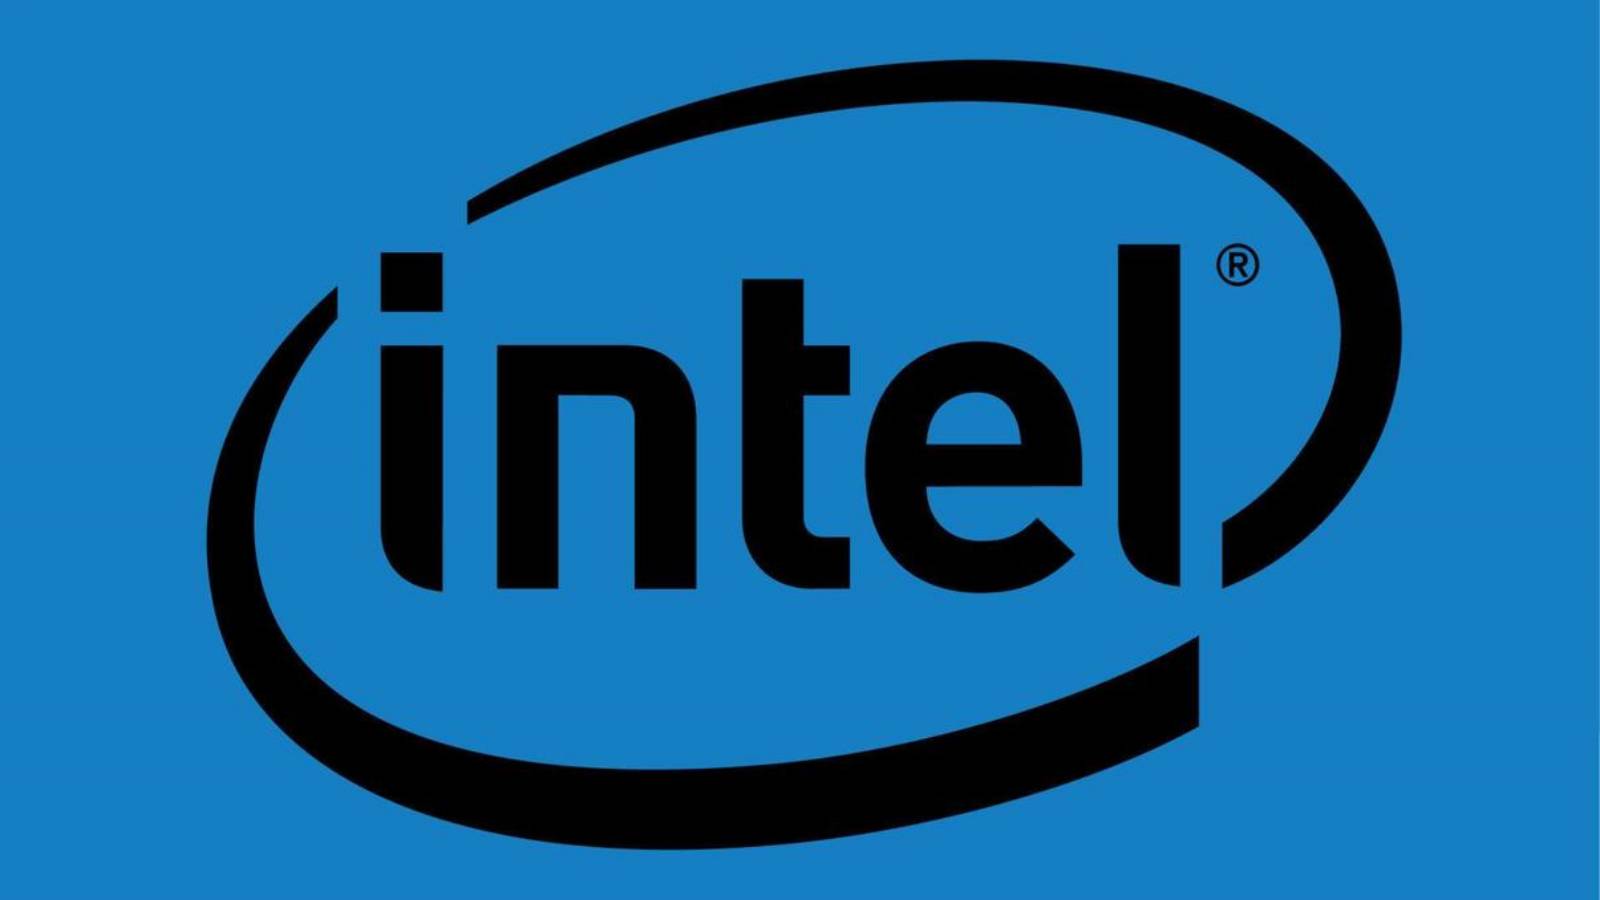 Huawei Intel GANA a AMD gracias a la administración de Joe Biden